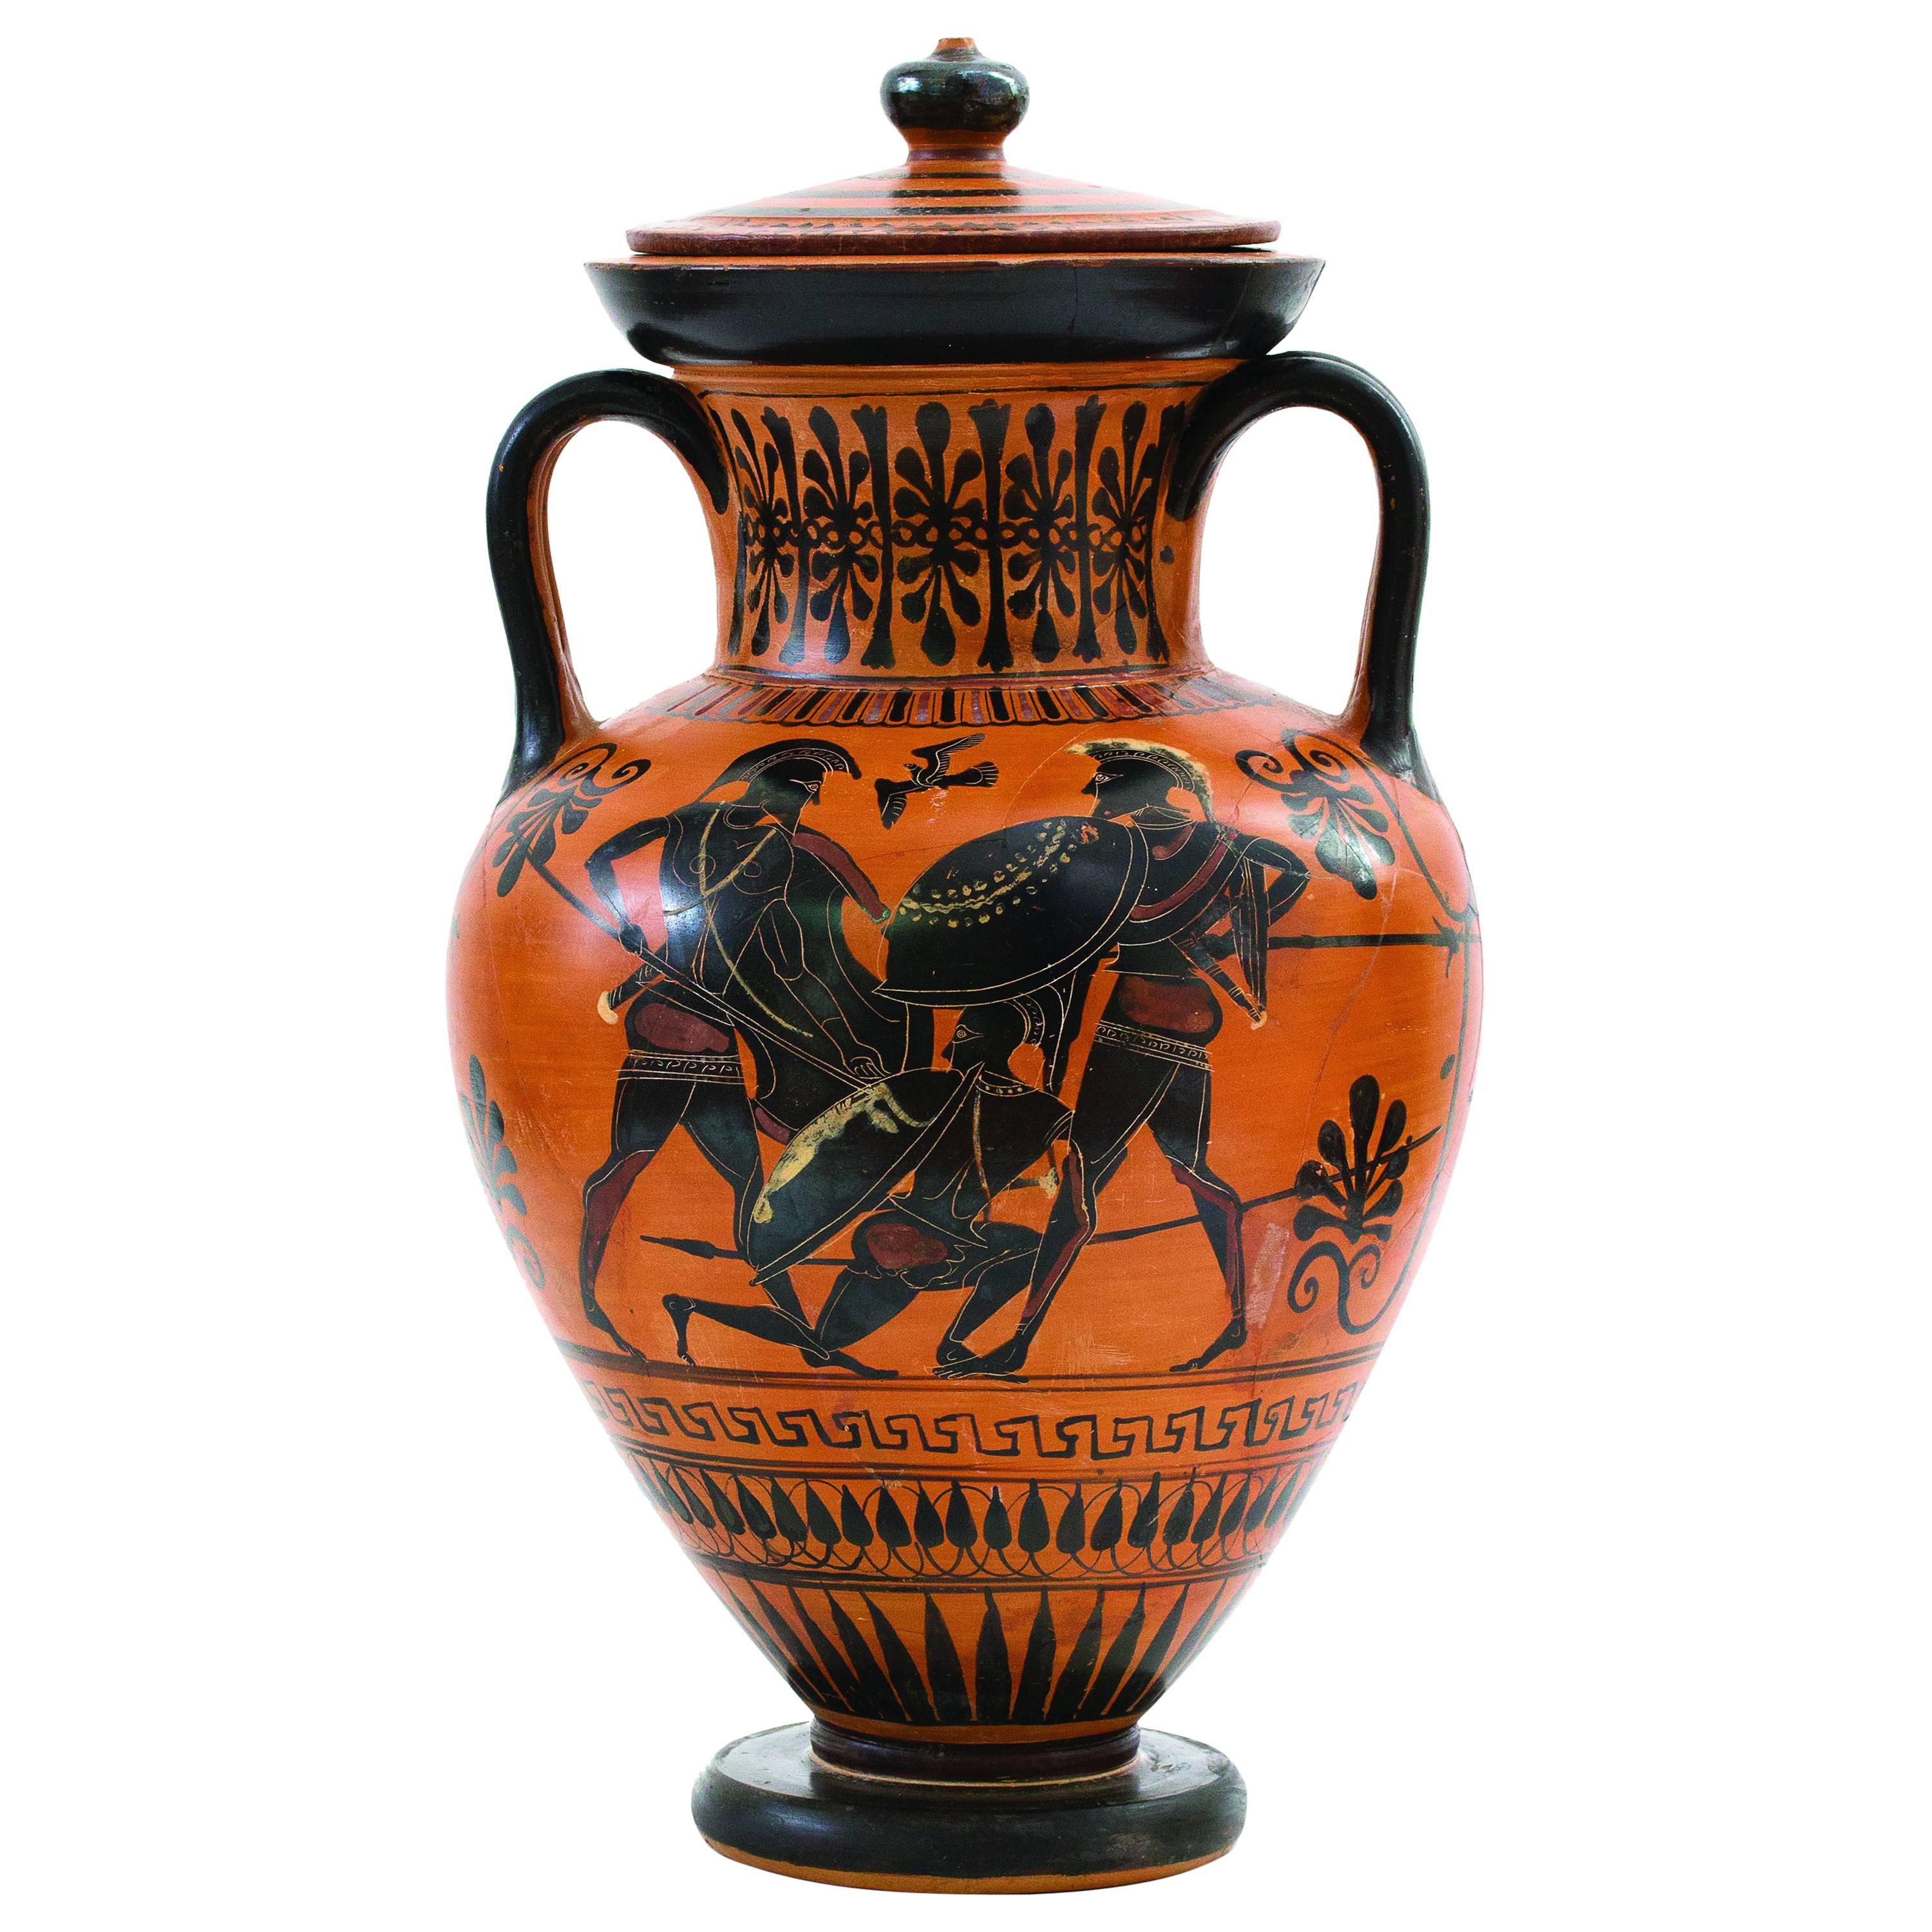 Attic Black-Figured Amphora, 530–500 BC